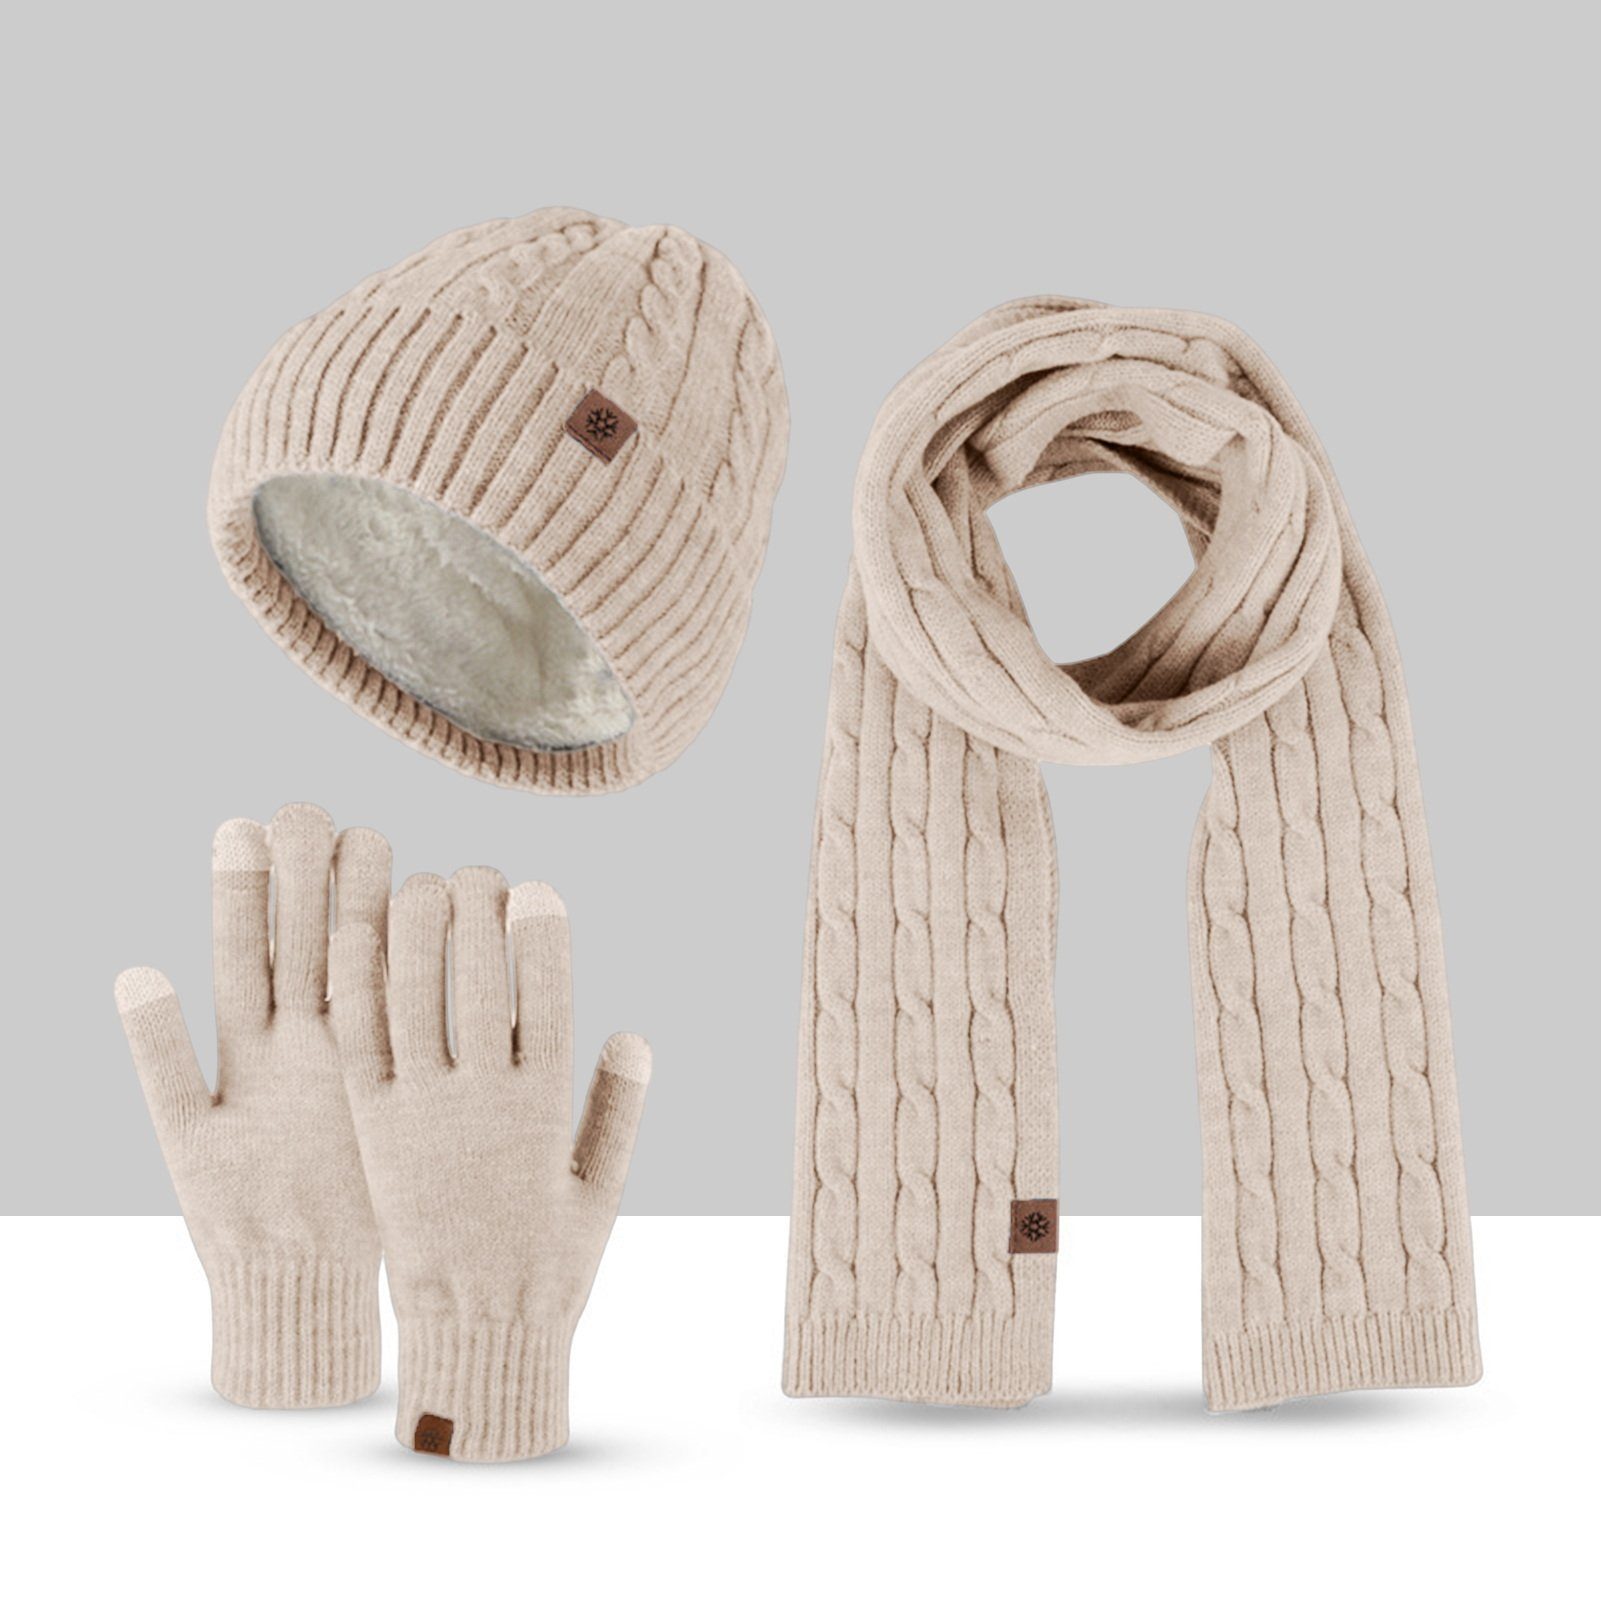 Rutaqian Beanie Winter Warm Beanie Mütze Schal und Touchscreen Handschuhe Set (Der Durchmesser des Hutes beträgt 22,5 cm, was etwas größer sein wird, Dreiteiliges, kältebeständiges, warmes Fleece-Set für den Außenbereich) für Herren und Damen (große Größe) Khaki